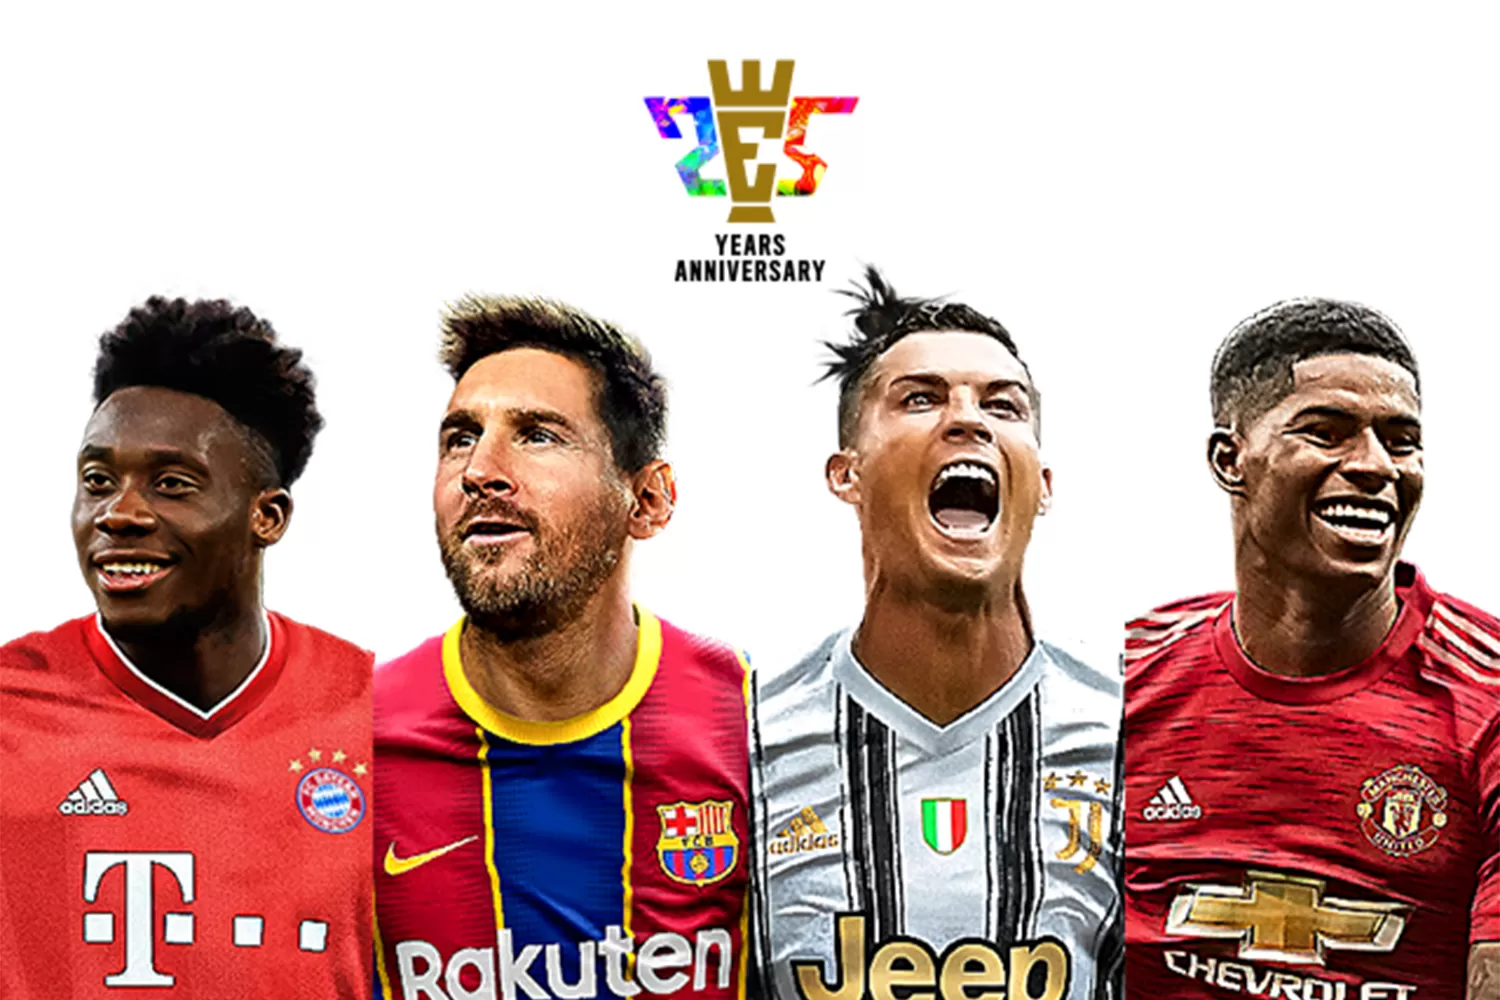 Videojuegos: Messi y Ronaldo, juntos en la portada del PES 2021